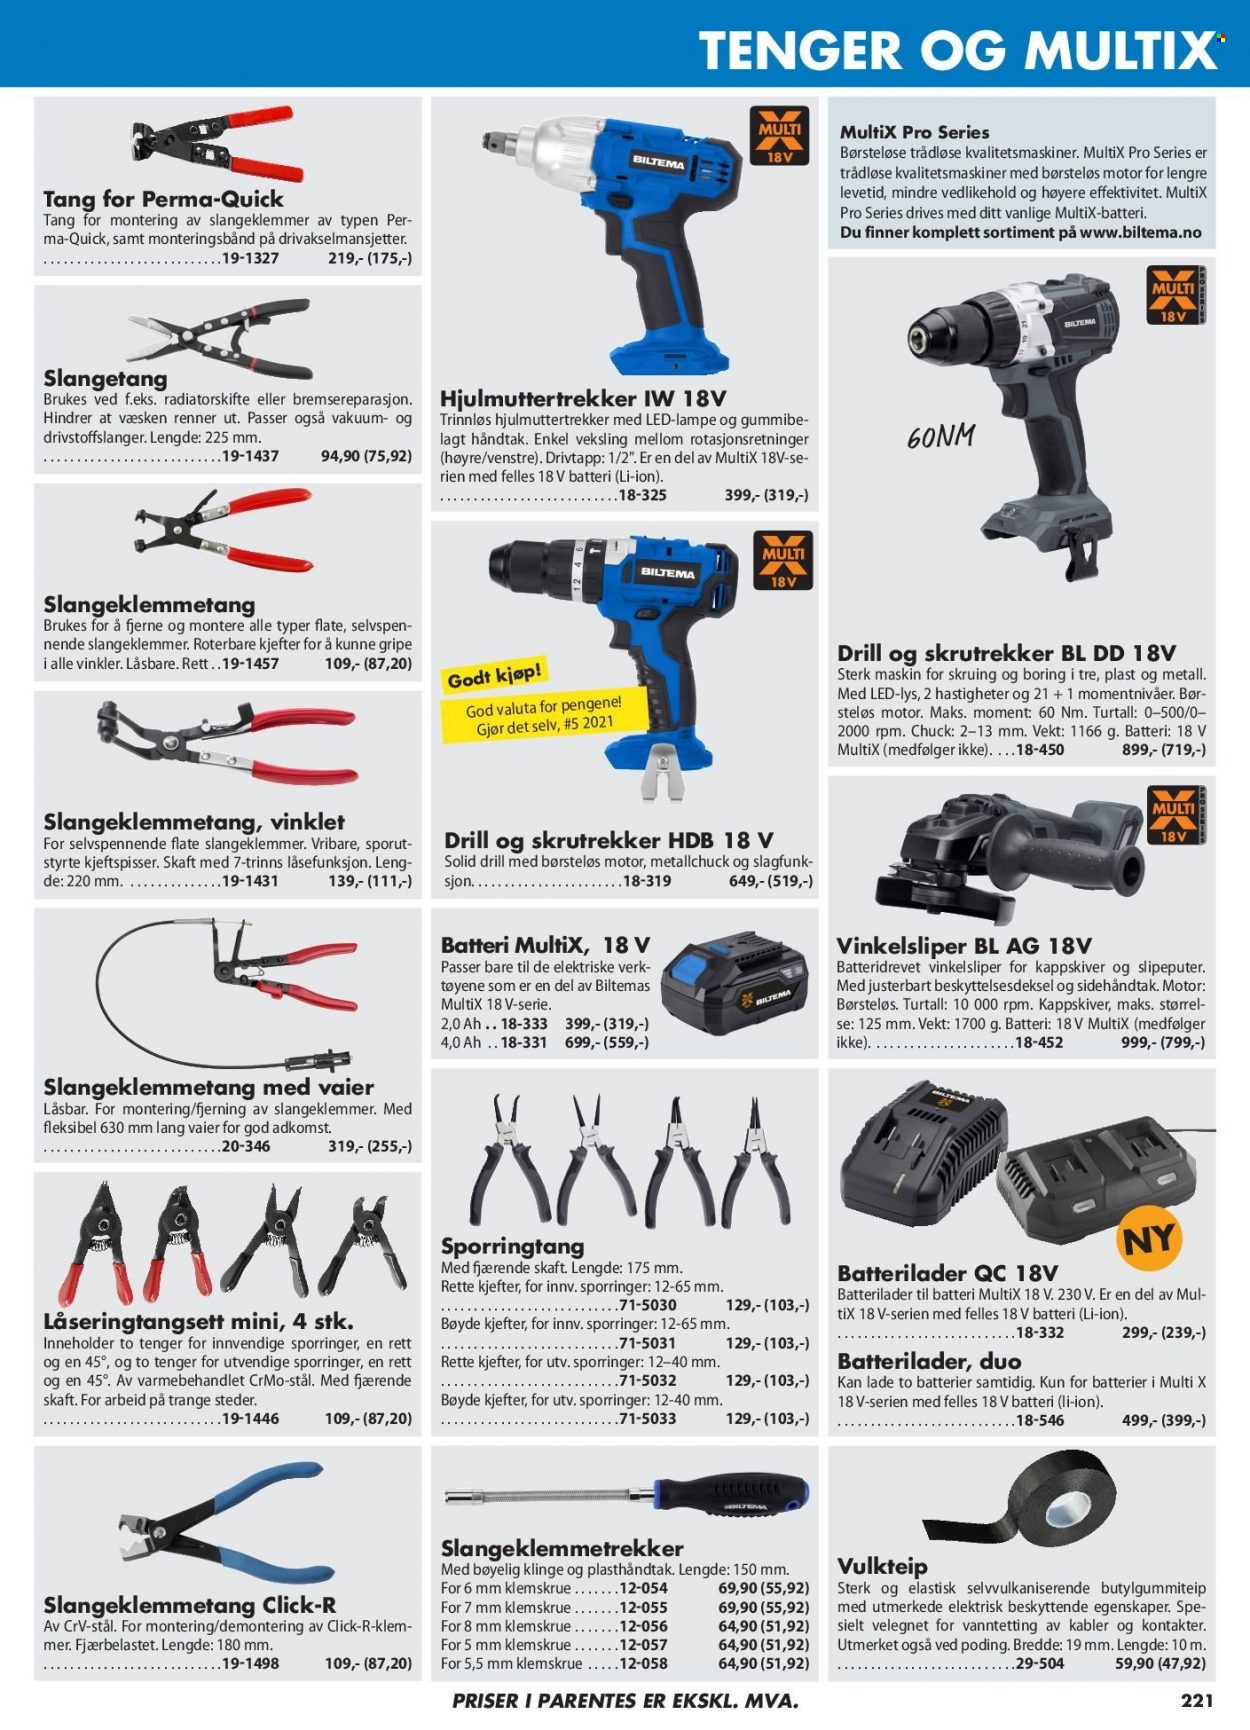 thumbnail - Kundeavis Biltema - Produkter fra tilbudsaviser - batterilader, lampe, drill, skrutrekker. Side 221.